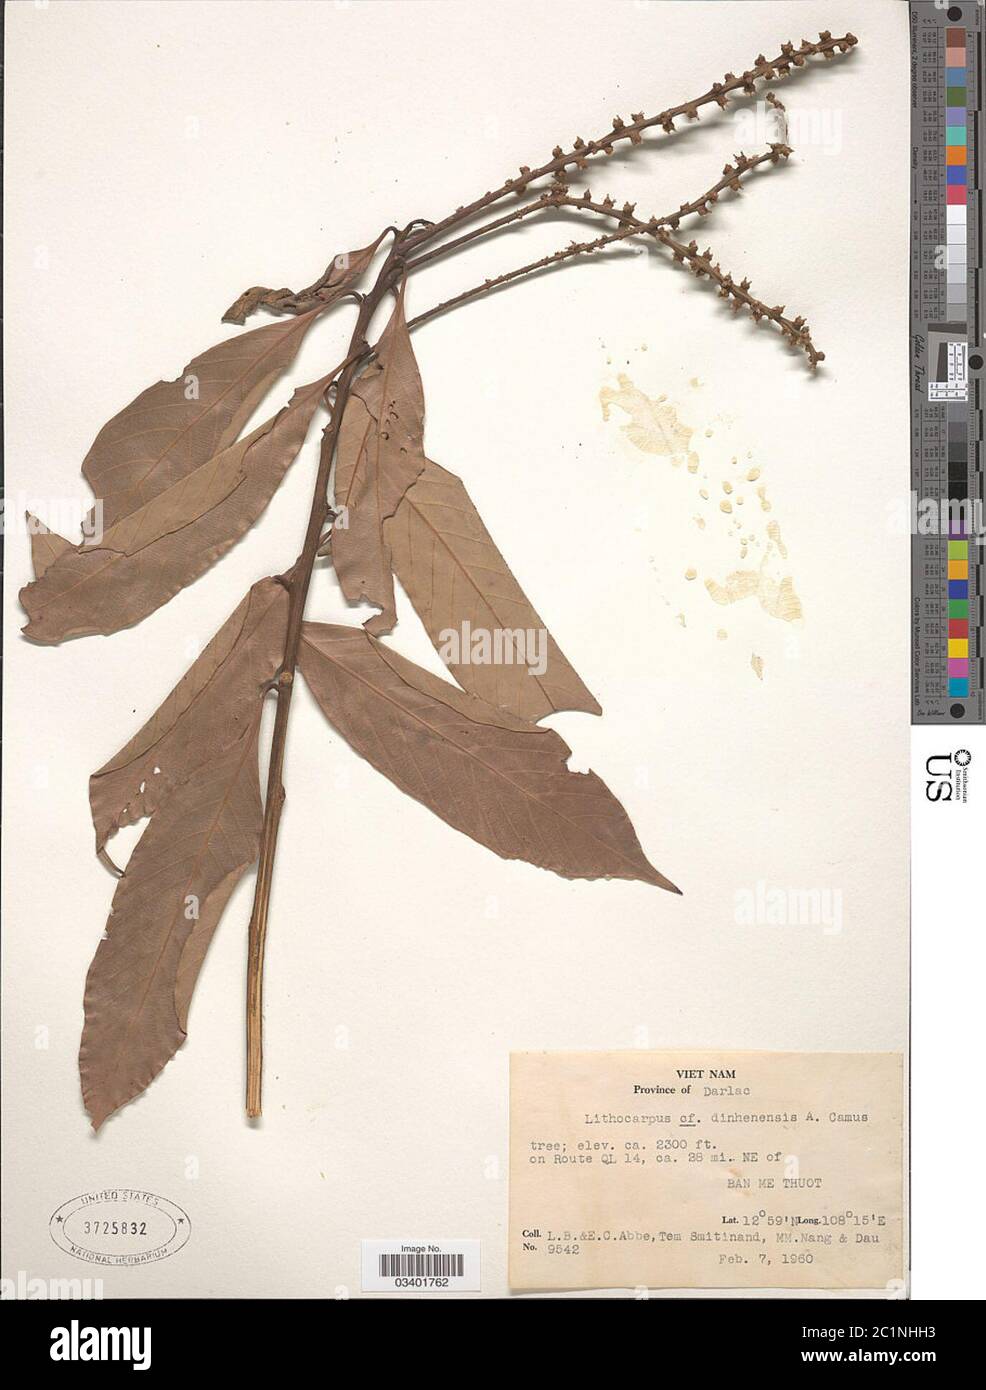 Lithocarpus dinhensis Hickel A Camus A Camus Lithocarpus dinhensis Hickel A Camus A Camus. Stock Photo